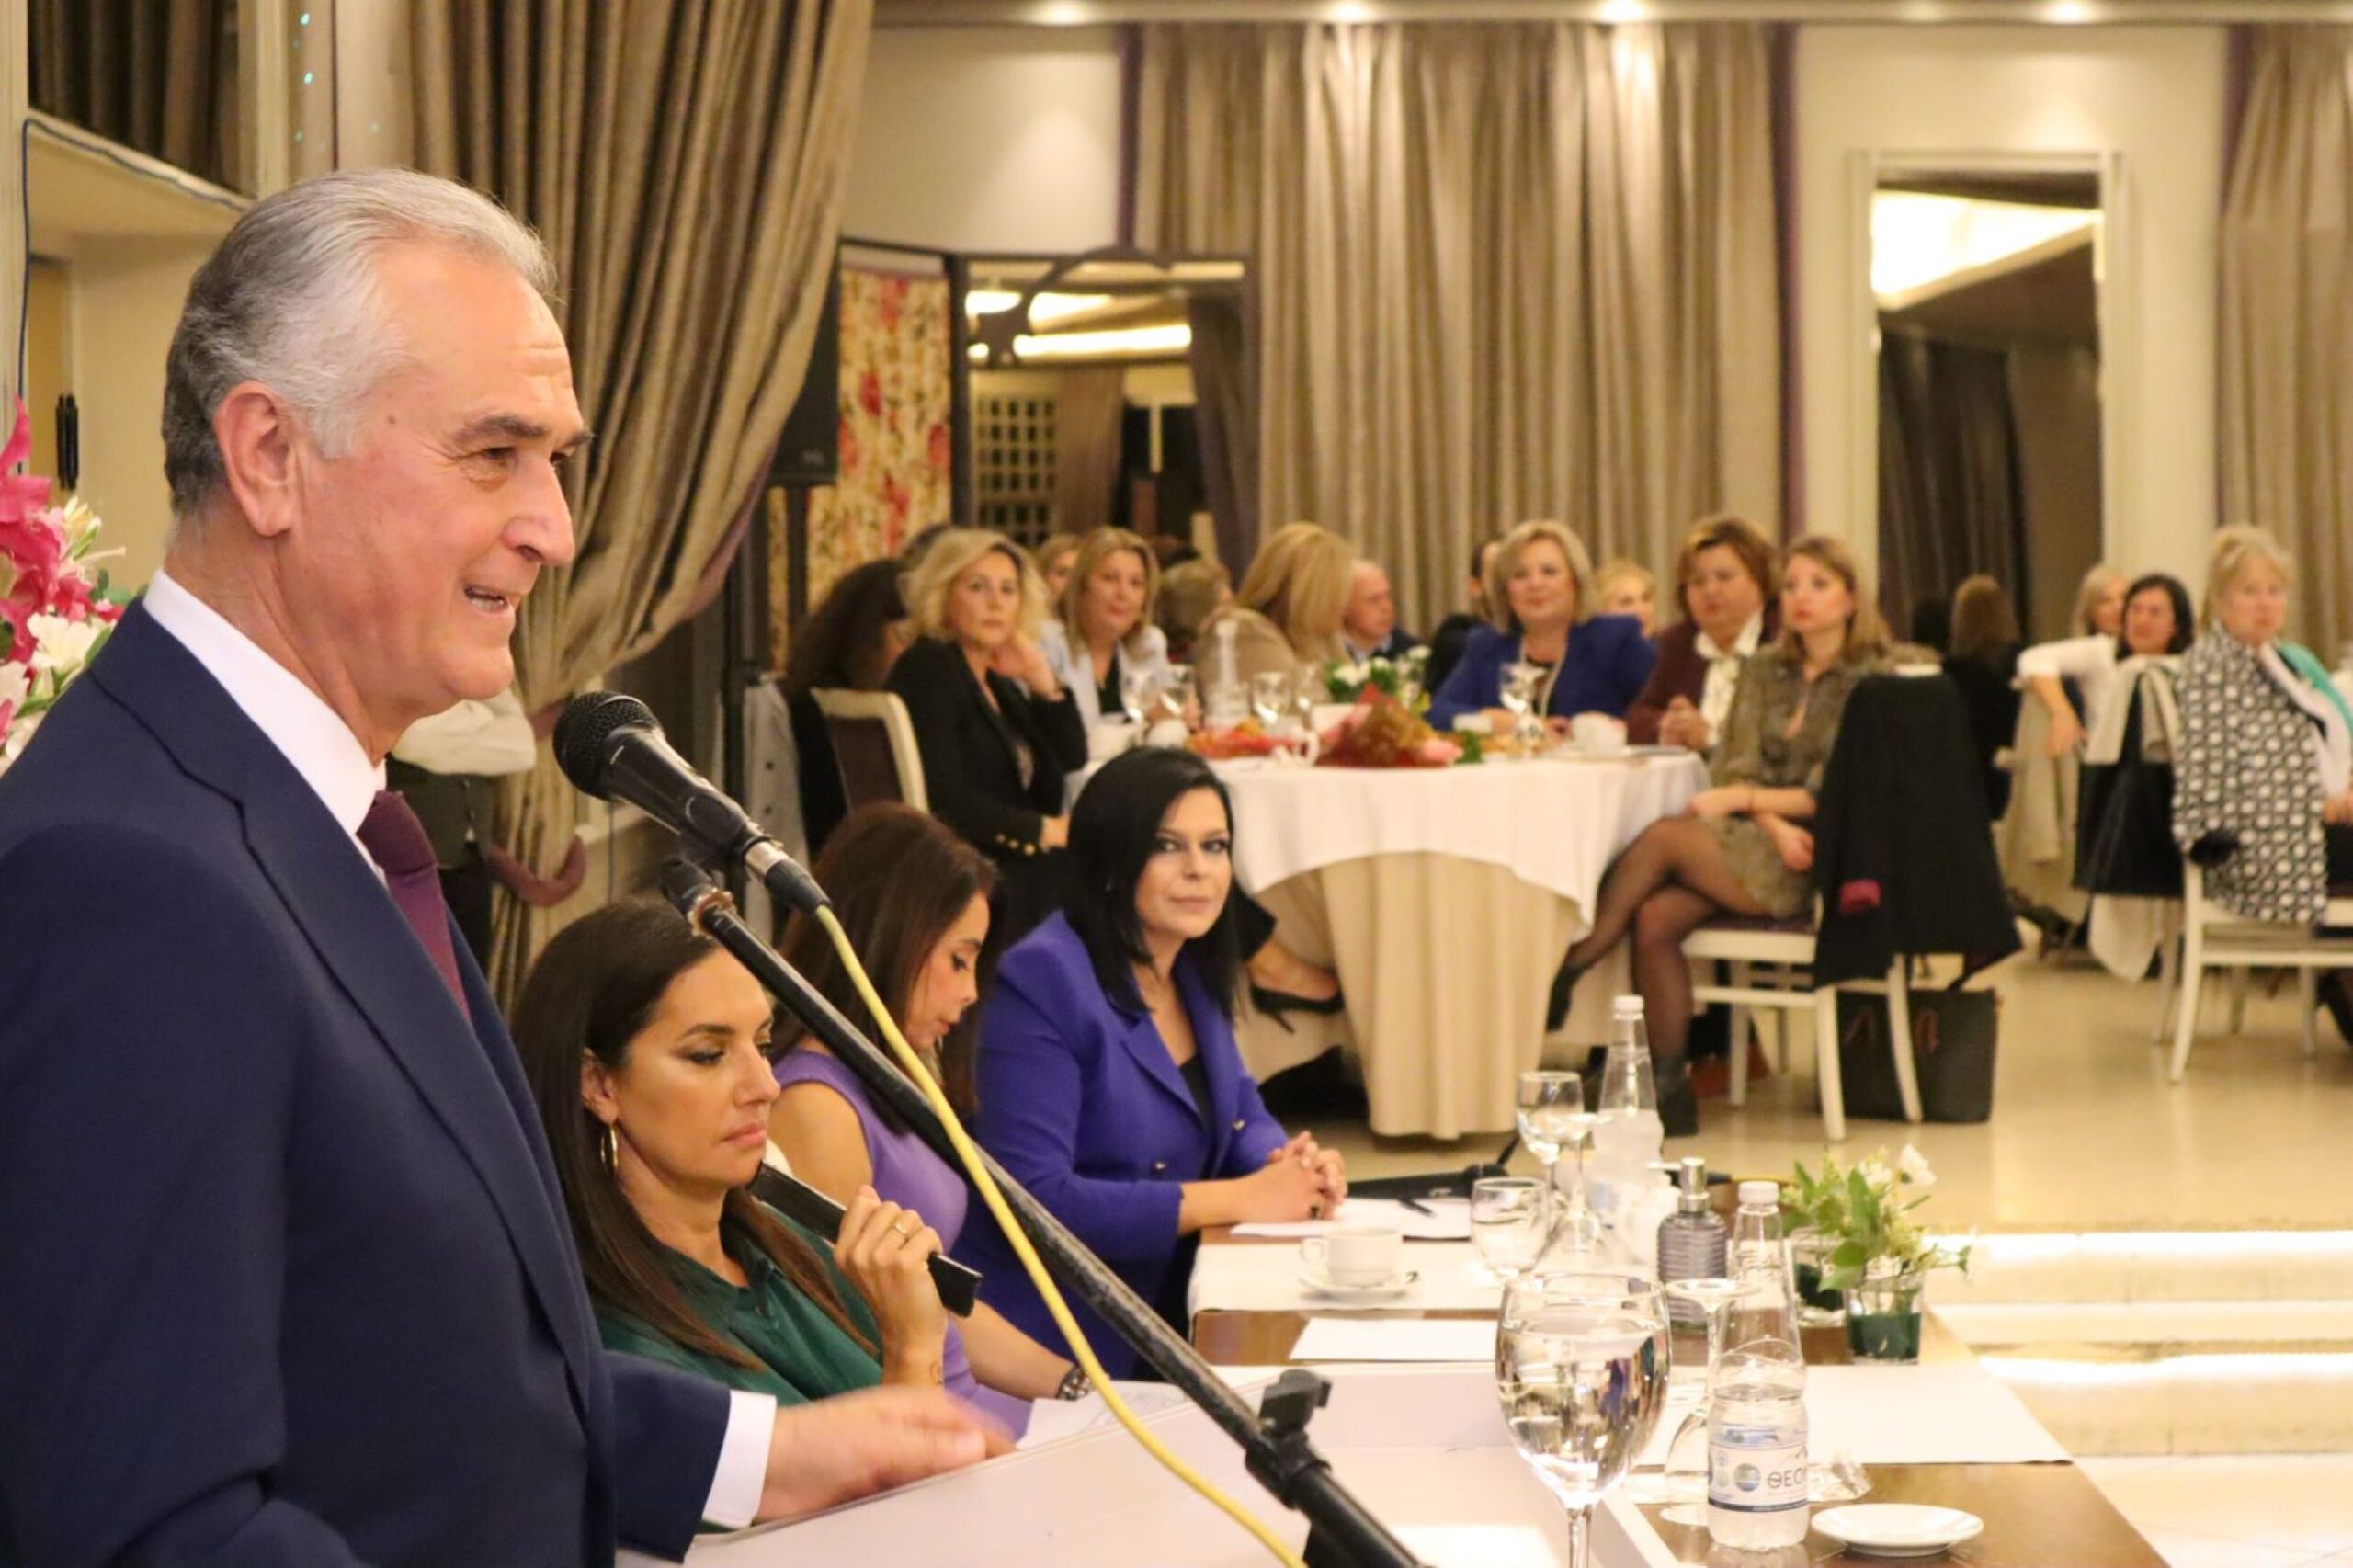 Σάββας Αναστασιάδης: “Ο δυναμικός ρόλος των γυναικών στη χώρα μας” (ΦΩΤΟΡΕΠΟΡΤΑΖ)